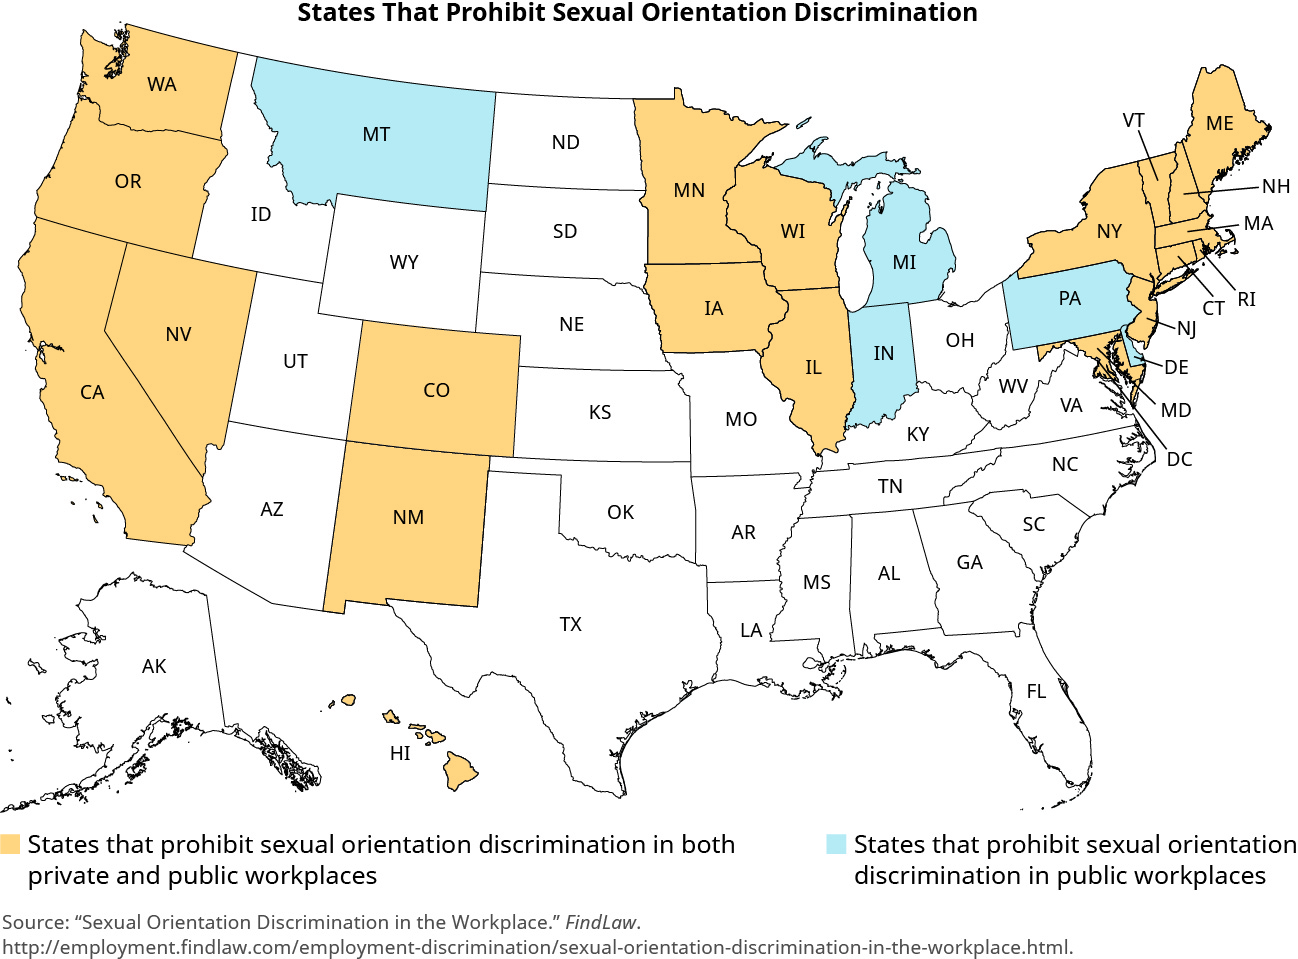 Une carte des États-Unis s'intitule « Les États qui interdisent la discrimination fondée sur l'orientation sexuelle ». Les États sont colorés pour indiquer les États qui interdisent la discrimination fondée sur l'orientation sexuelle sur les lieux de travail publics et privés. Les États qui interdisent la discrimination fondée sur l'orientation sexuelle sur les lieux de travail privés et publics sont la Californie, le Colorado, le Connecticut, Hawaï, l'Illinois, l'Iowa, le Maine, le Maryland, le Massachusetts, le Minnesota, le Nevada, le New Hampshire, le New Jersey, le New Jersey, le Nouveau-Mexique, New York, l'Oregon, le Rhode Island, le Vermont, Washington et le Wisconsin. Les États qui interdisent la discrimination fondée sur l'orientation sexuelle sur les lieux de travail publics sont le Delaware, l'Indiana, le Michigan, le Montana et la